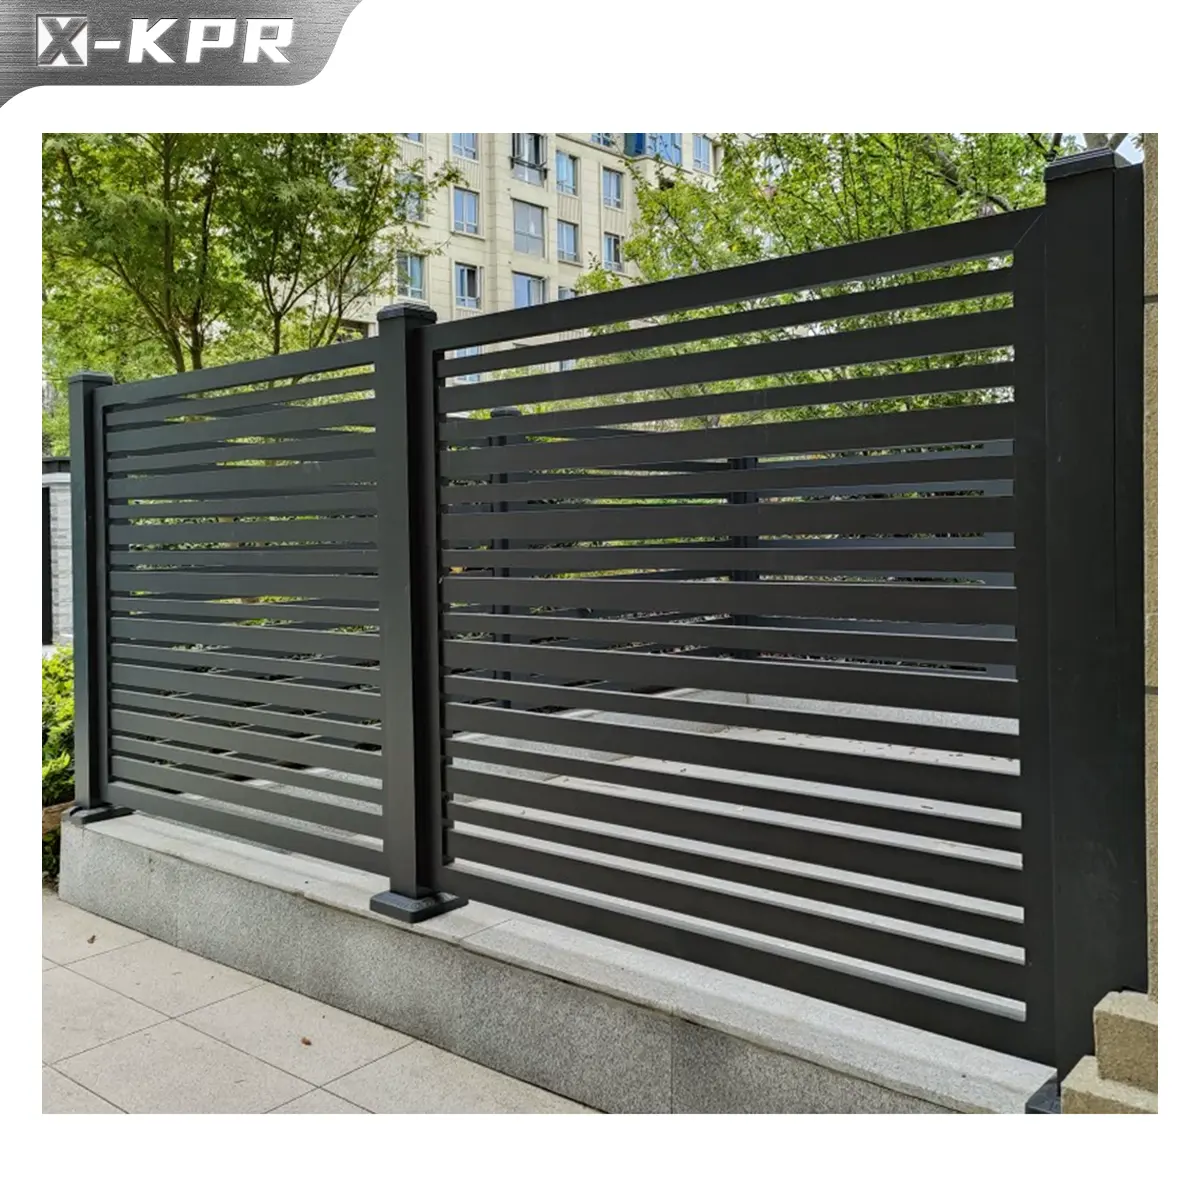 X-KPR Outdoor Haus Garten Aluminium Lamellen zaun Privatsphäre Aluminium Zaun Paneele